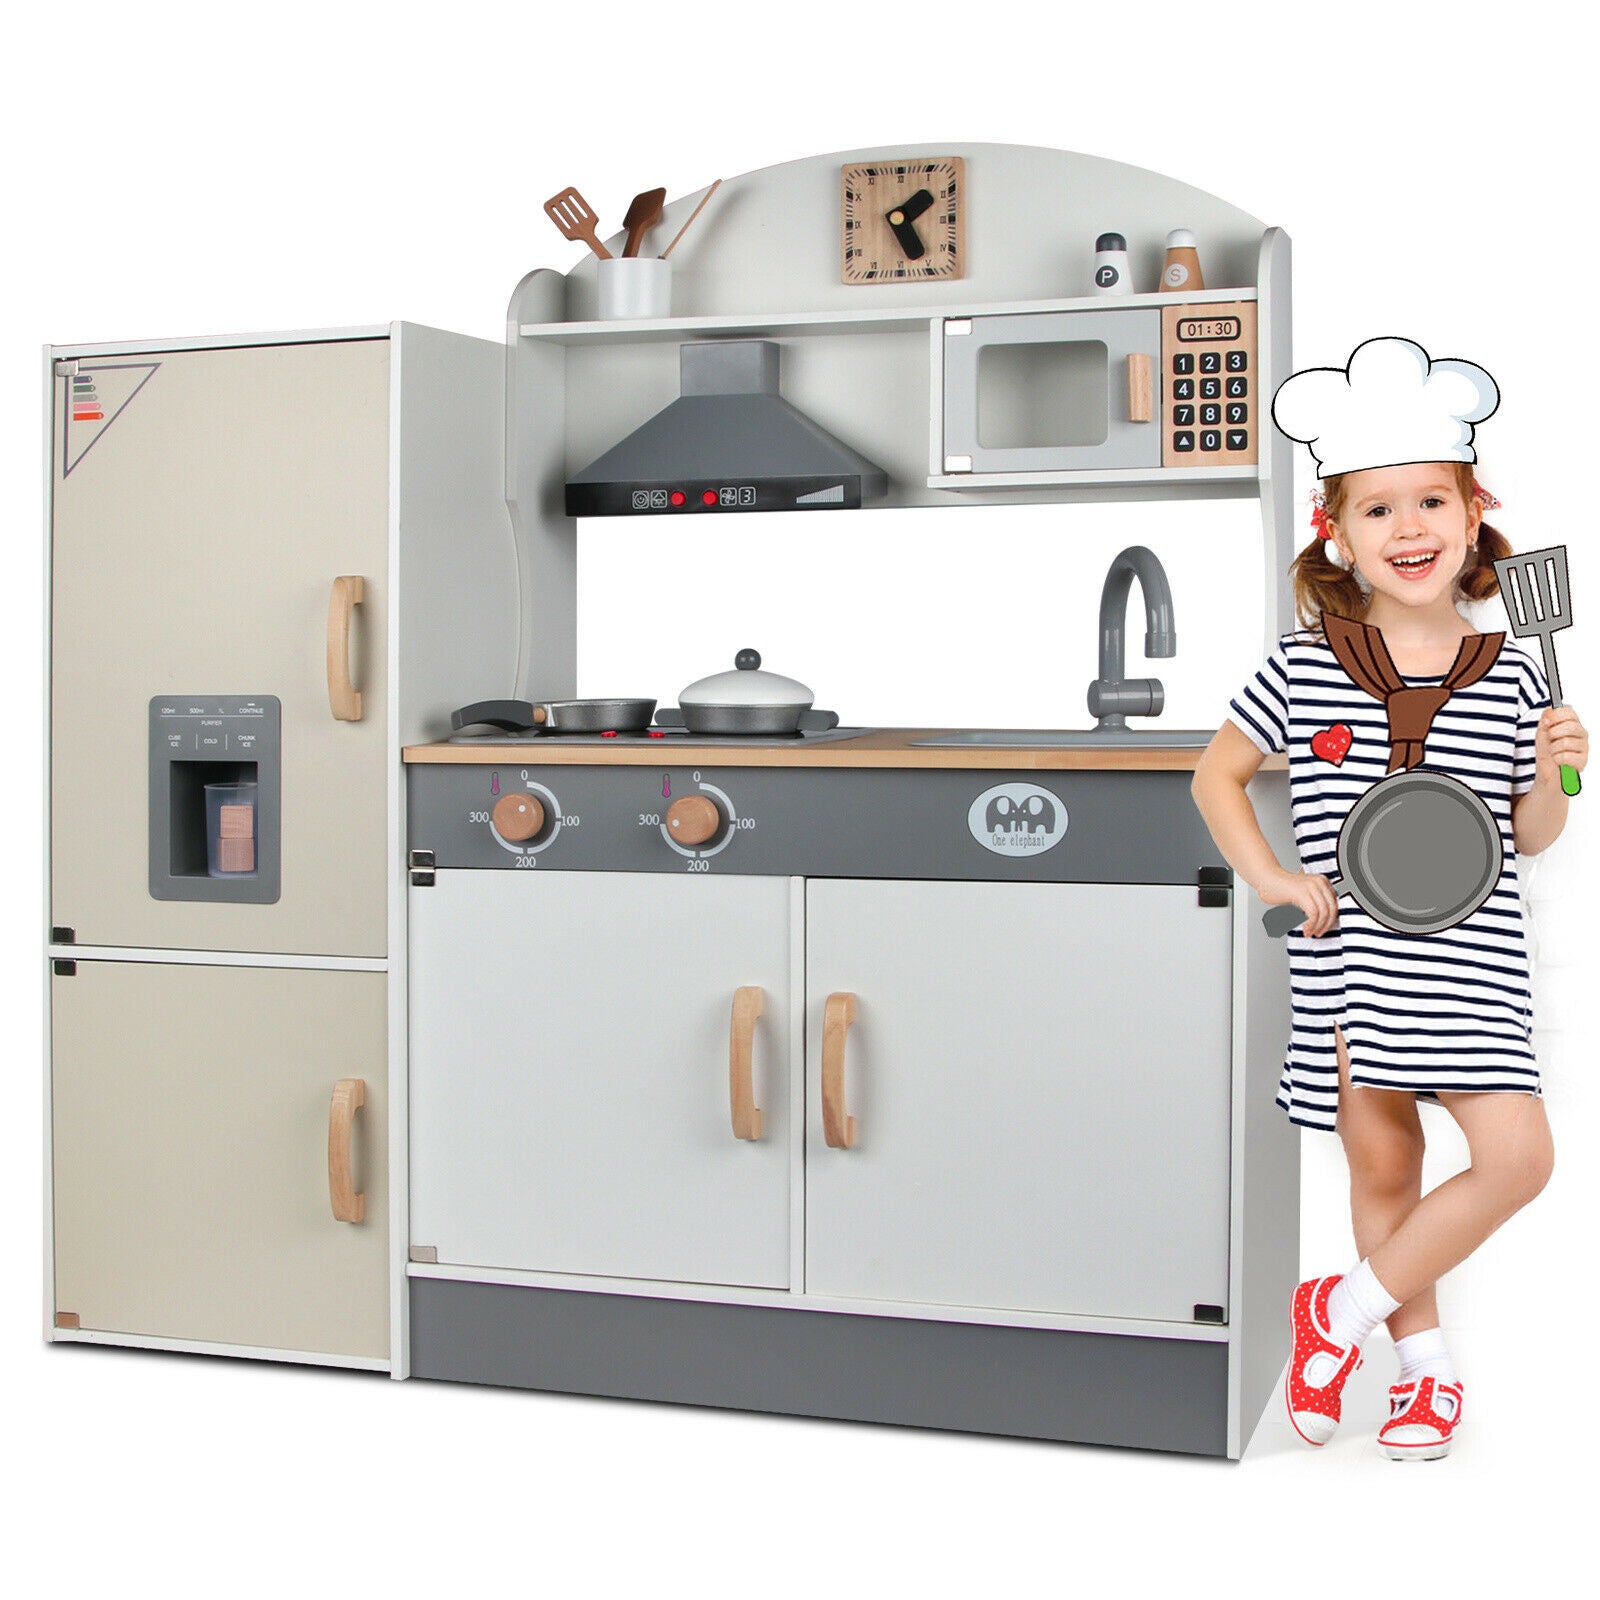 Kid Play Kitchen Pretend Wooden Toddler Ice Cube Dispenser Refrigerator Toy Set